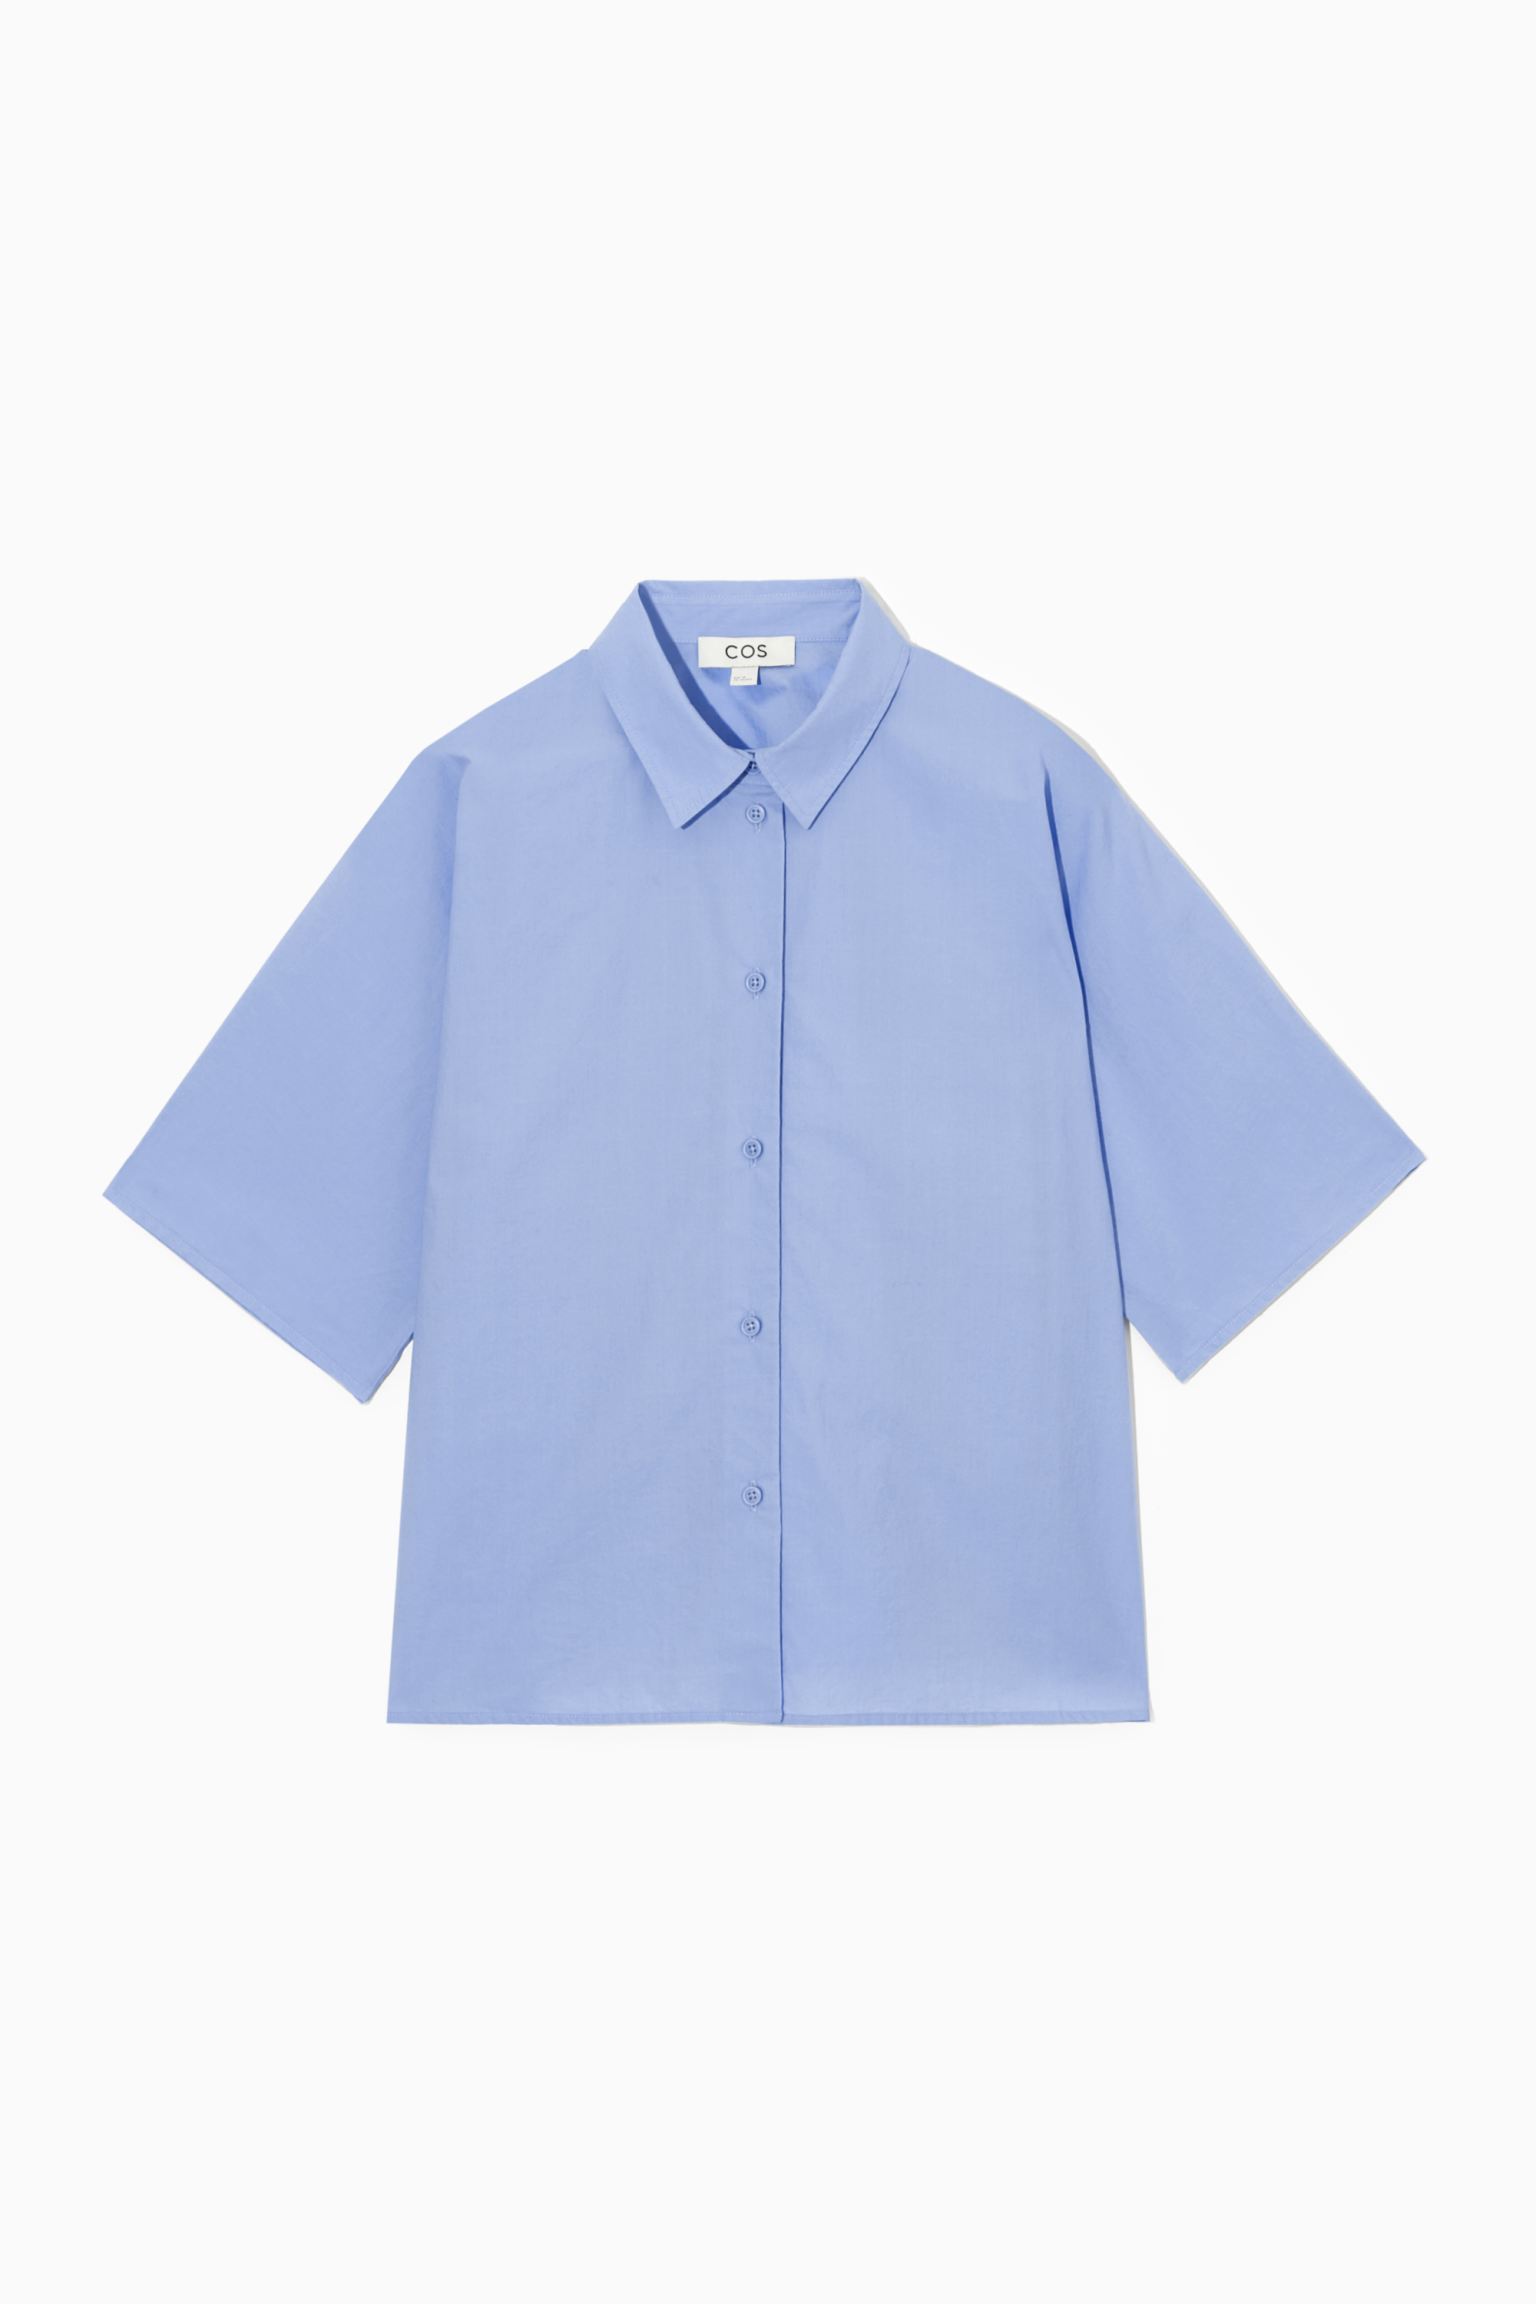 Рубашка женская COS 1163838002 голубая 44 EU (доставка из-за рубежа)